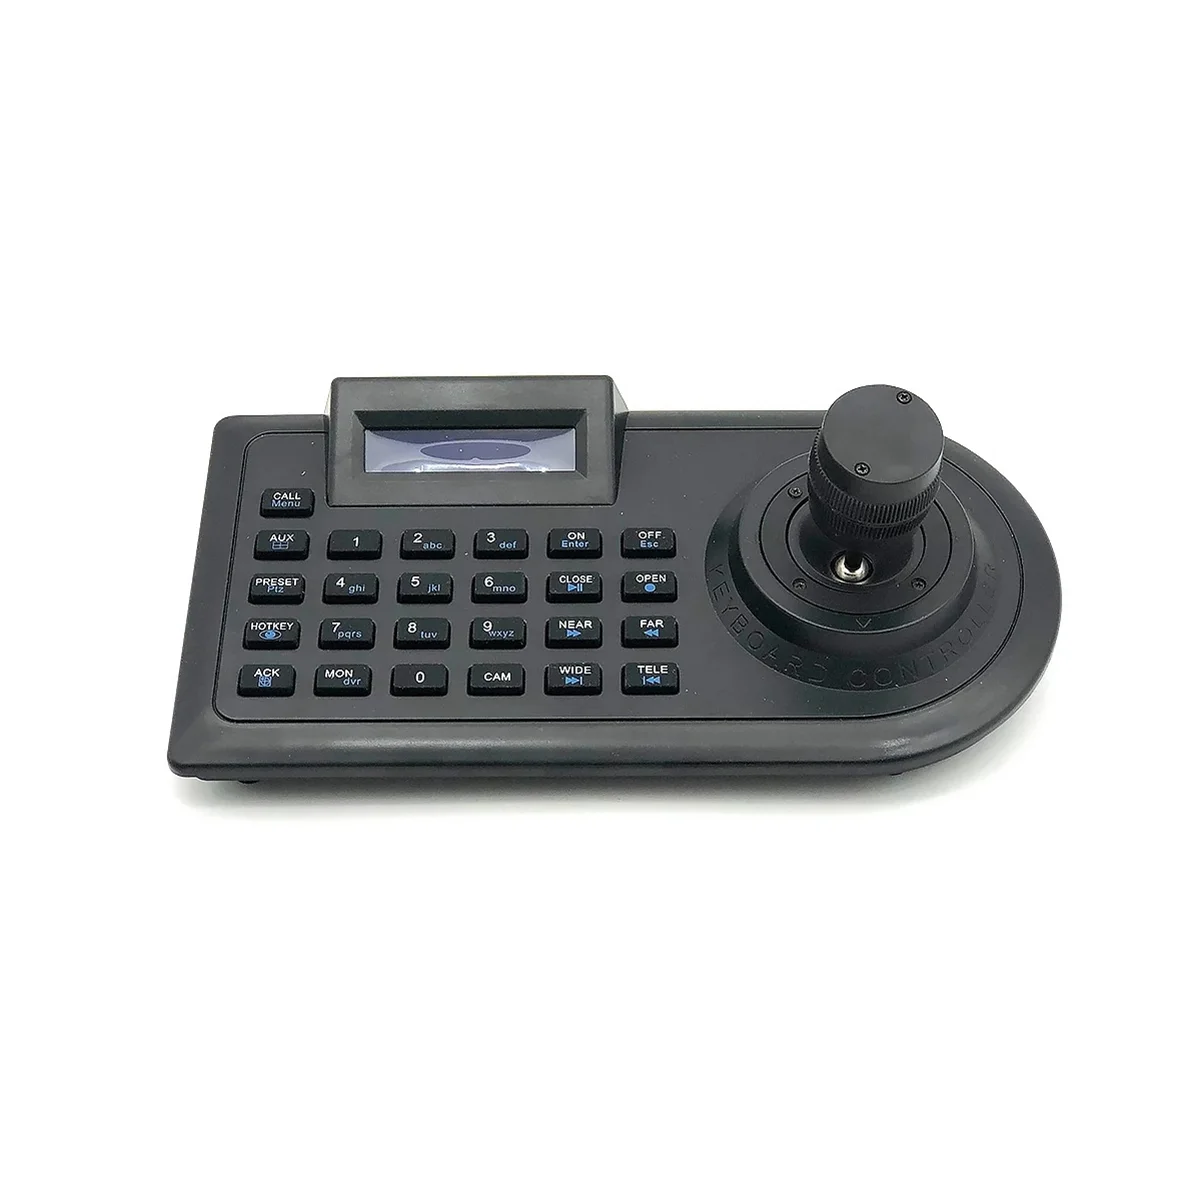 

3D оси джойстик телефон клавиатура для AHD Безопасность PTZ скорость контроллер клавиатура для систем видеонаблюдения DVR NVR Pelco RS485 ЕС разъем